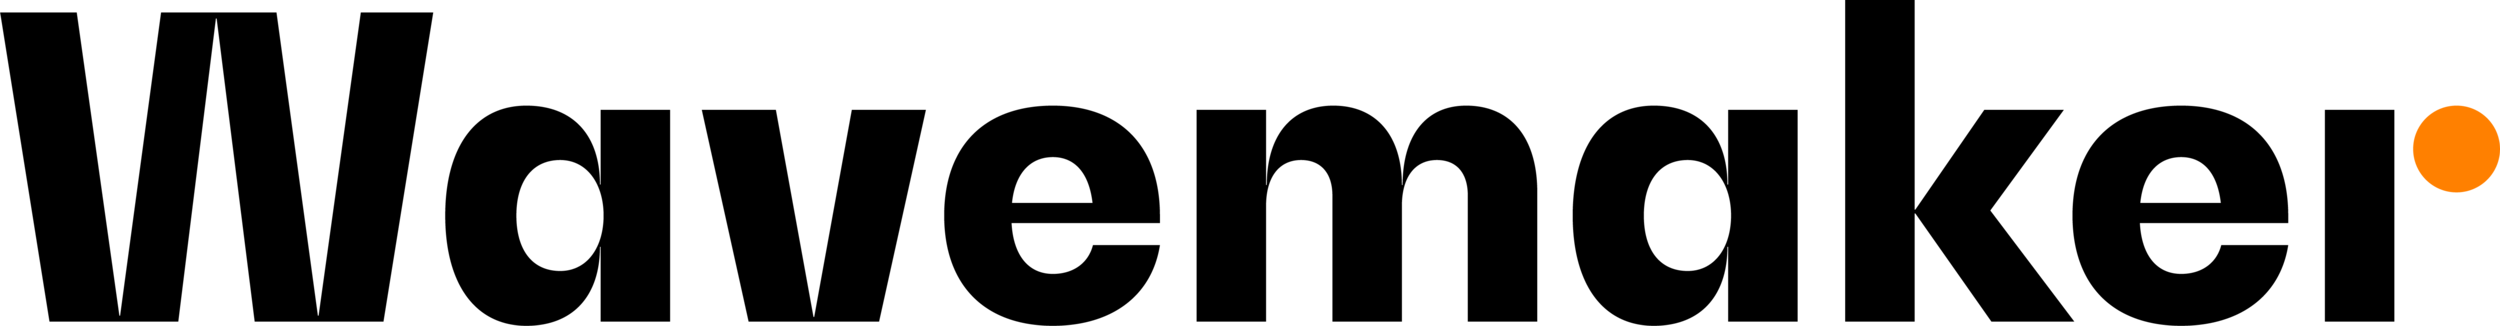 WM_Logo_RGB-002.png